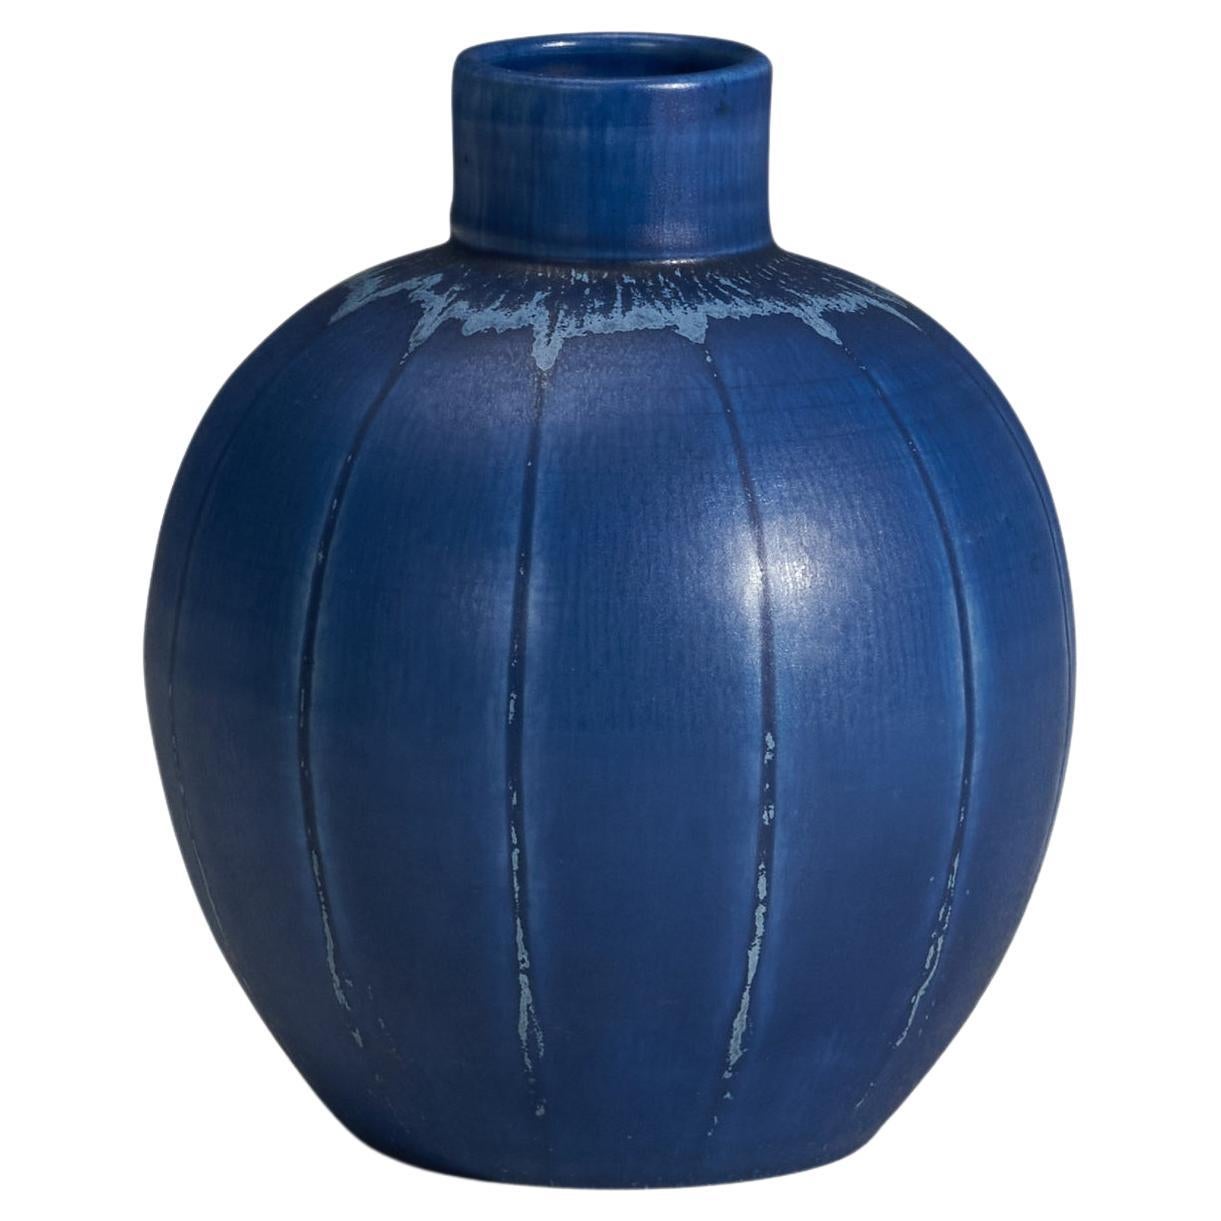 Eva Jancke Björk, Vase, Blue Glazed Earthenware, Bo Fajans, Sweden, 1940s